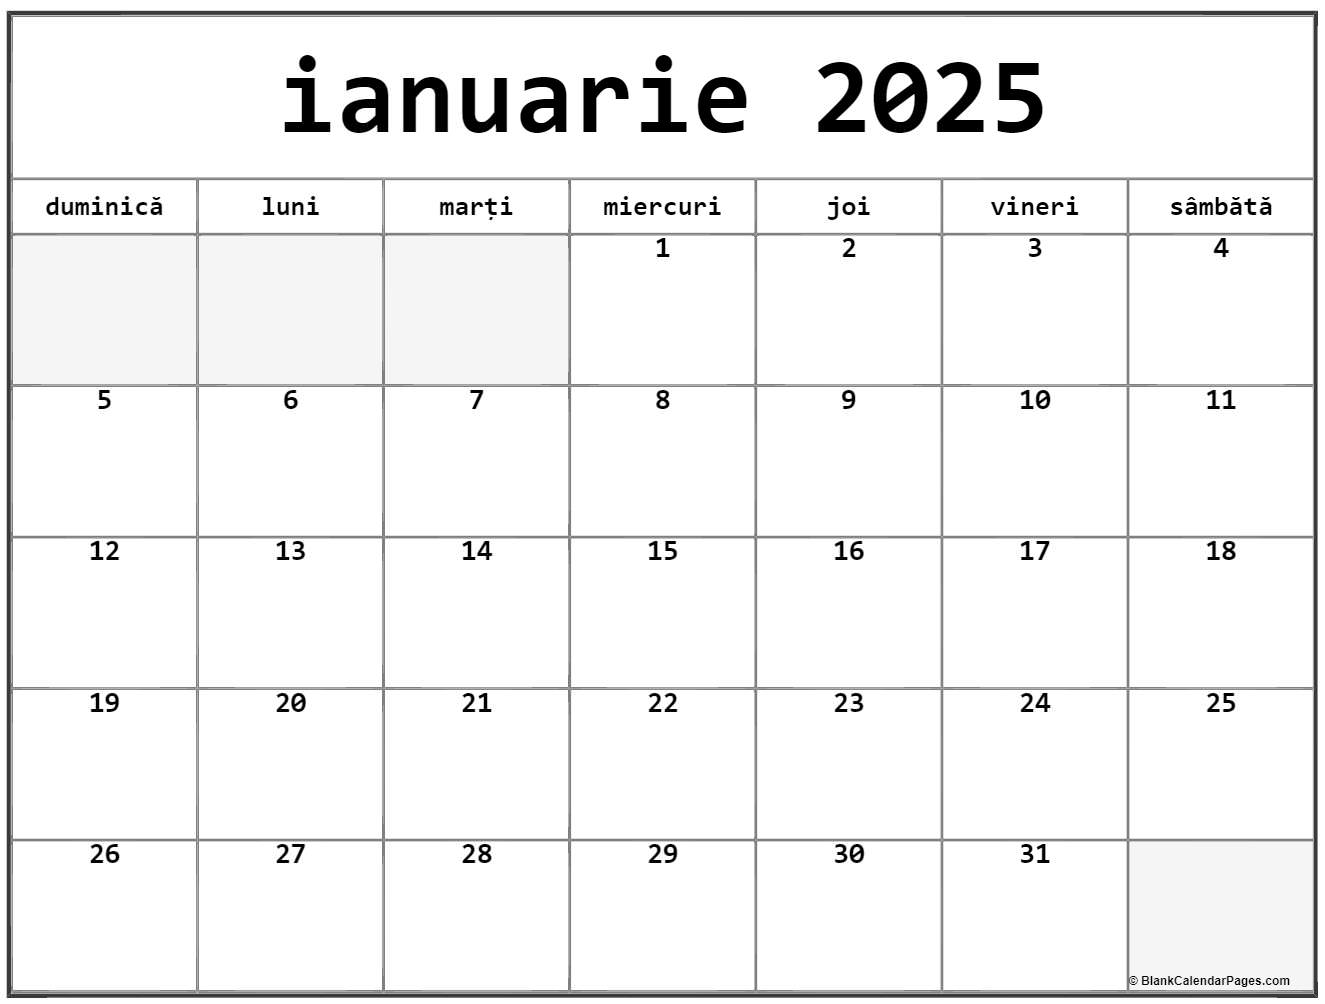 calendarul-ianuarie-2025-imprimabil-gratuit-in-romana